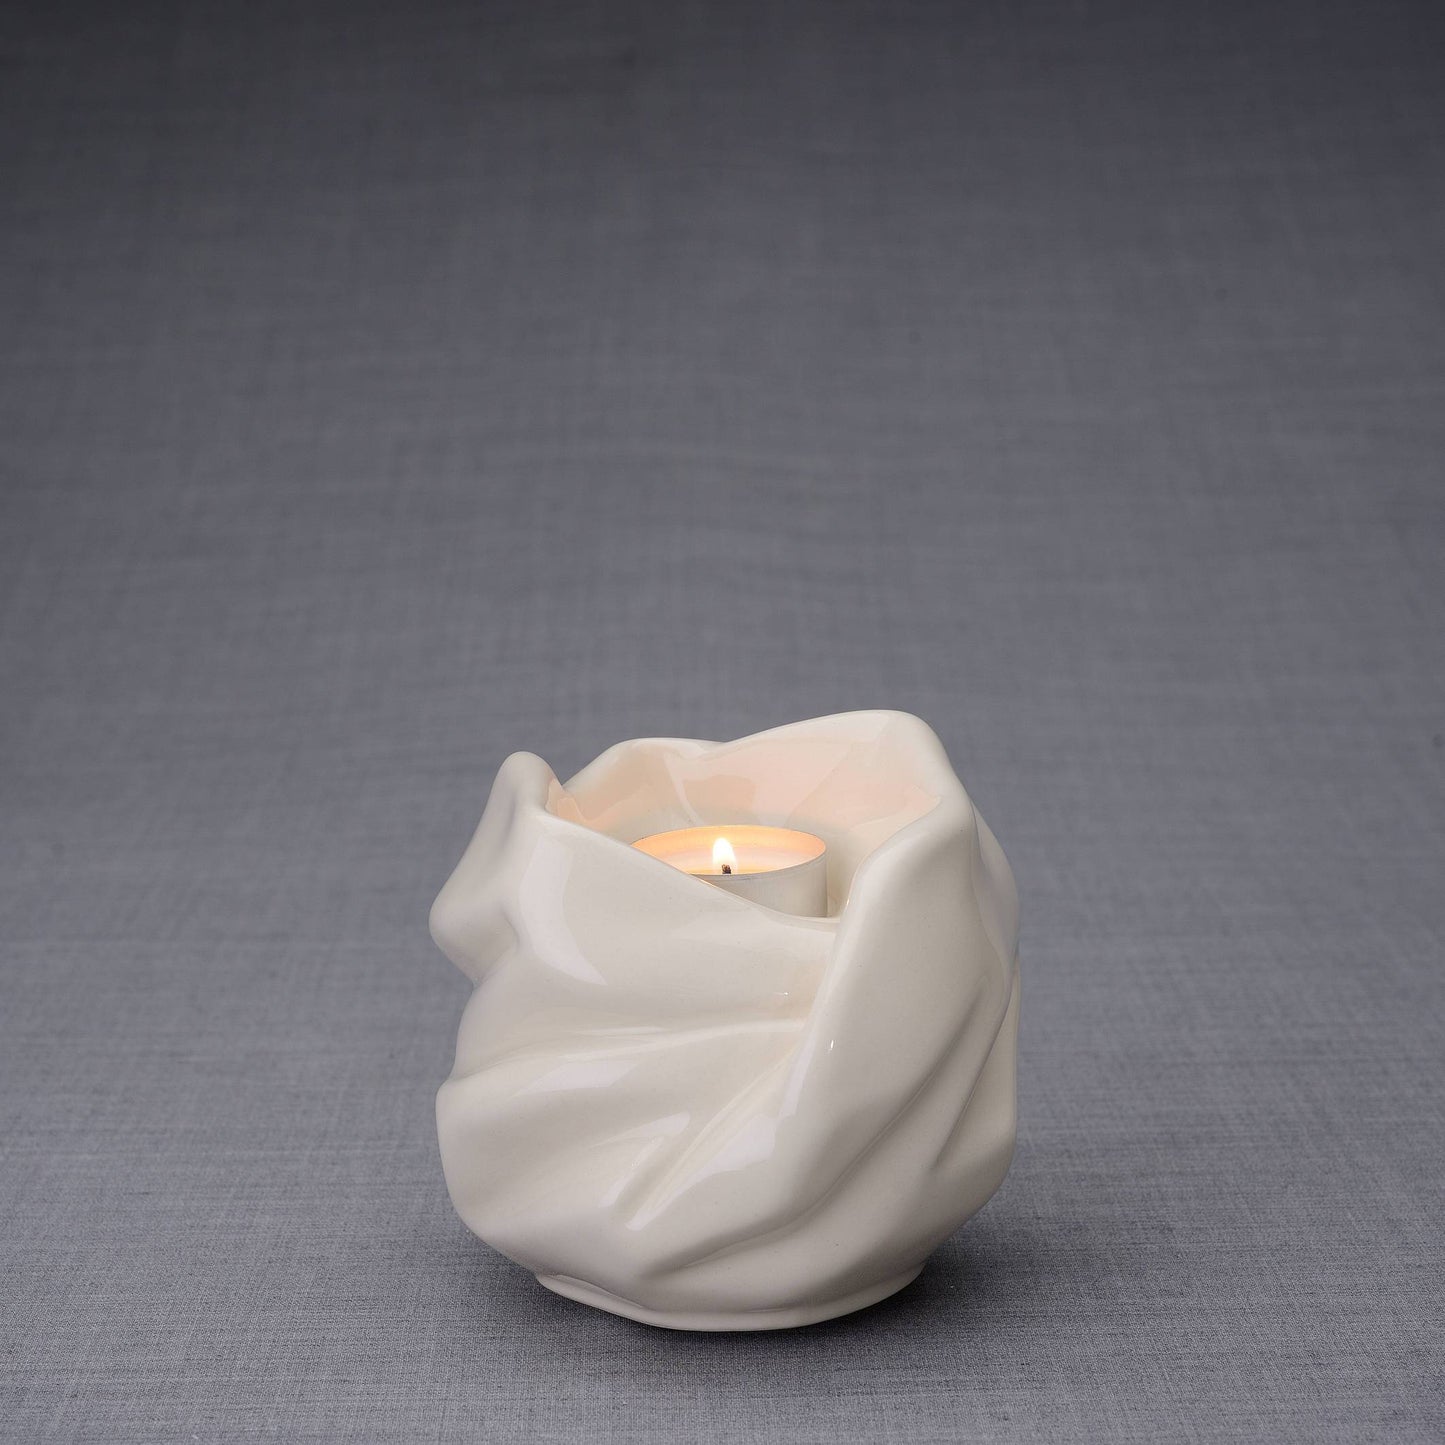 The Holy Mother Handmade Keepsake Cremation Urn for Ashes, color Transparent, Candle-holder-PulvisArtUrns-Pulvis Art Urns